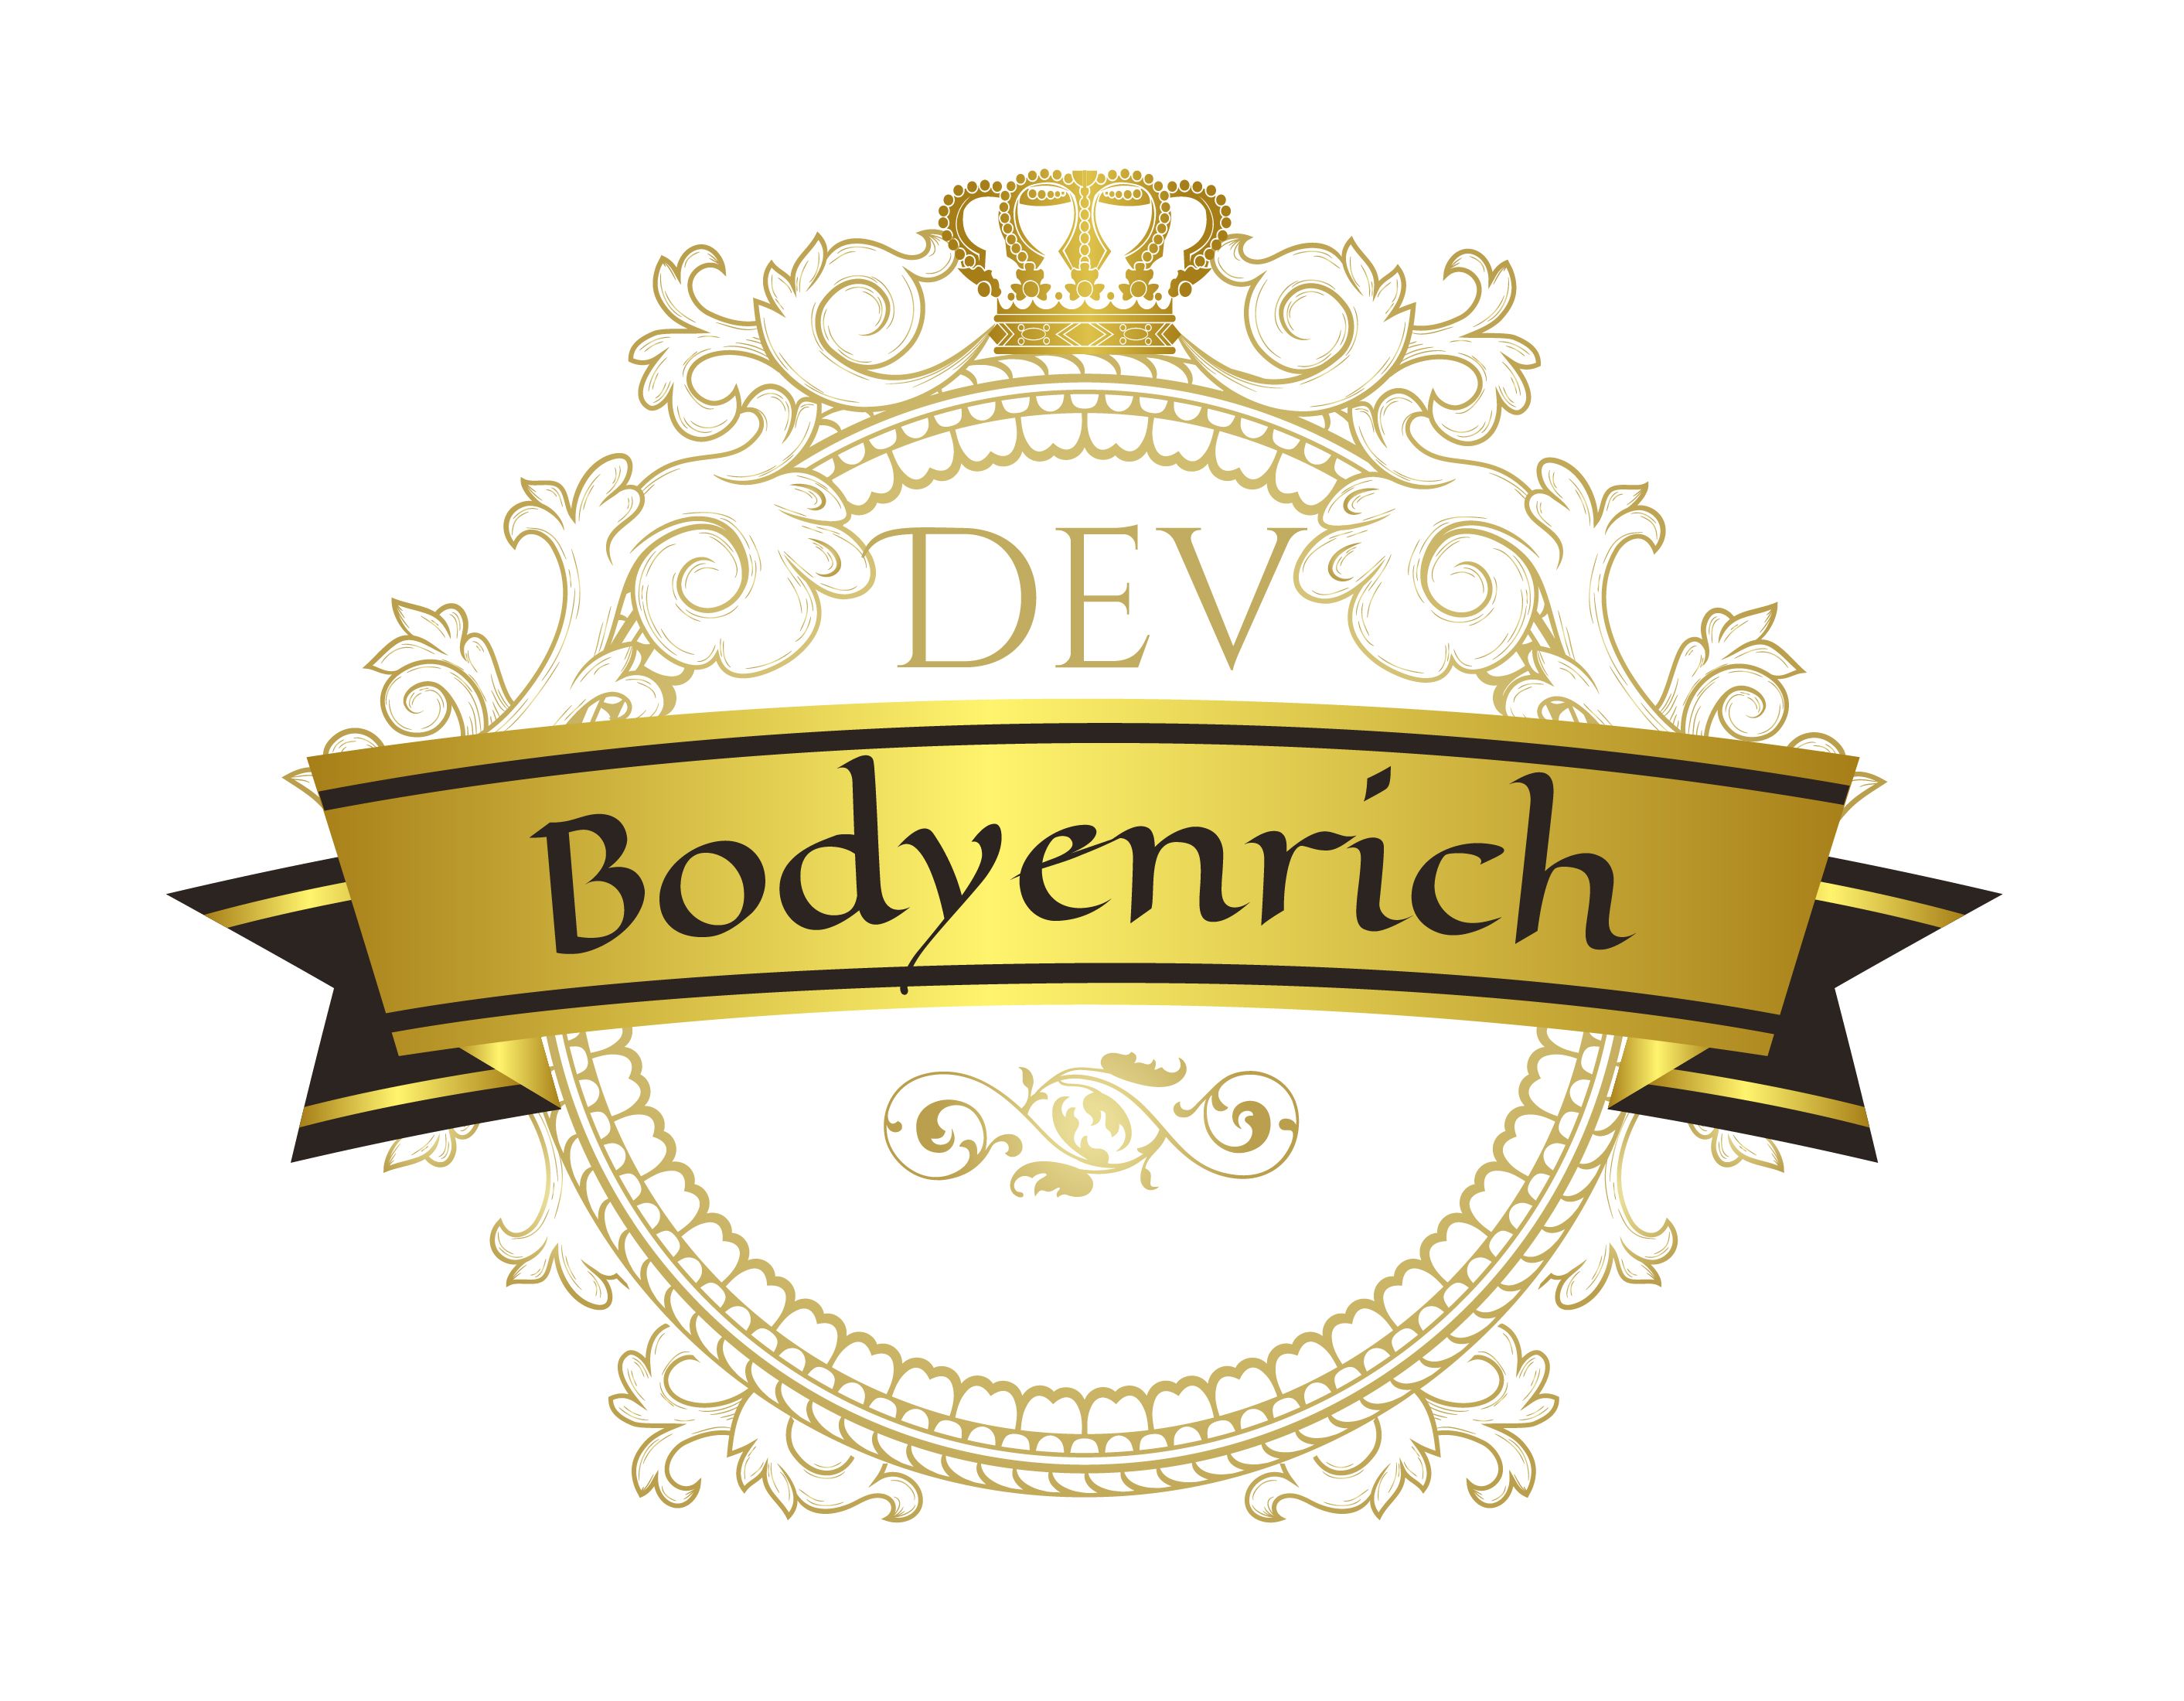 Bodyenrich Ltd